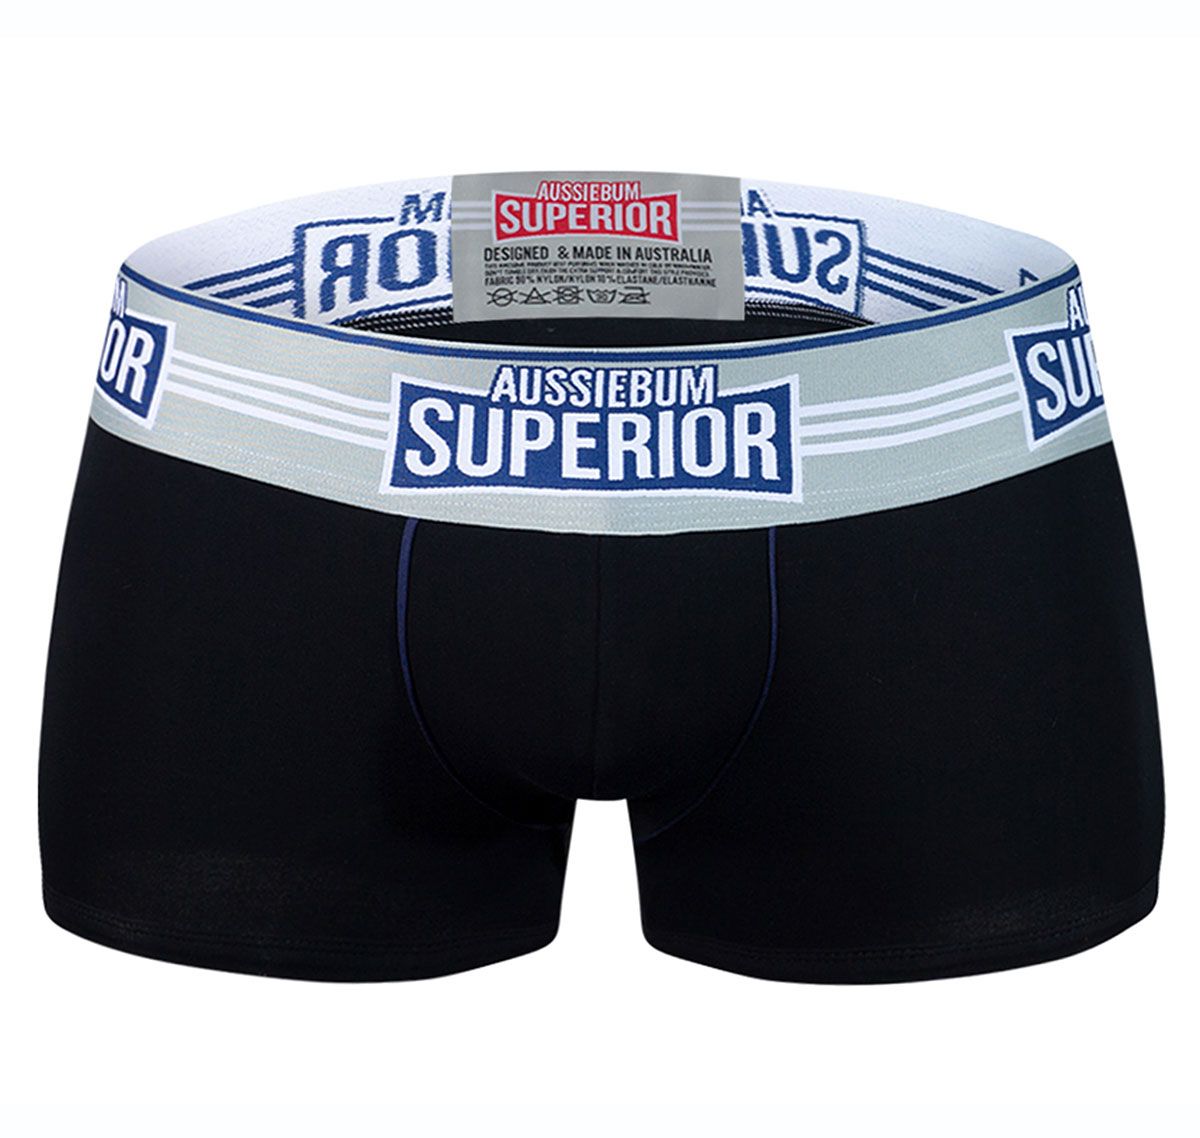 aussieBum Boxers SUPERIOR, blue/black